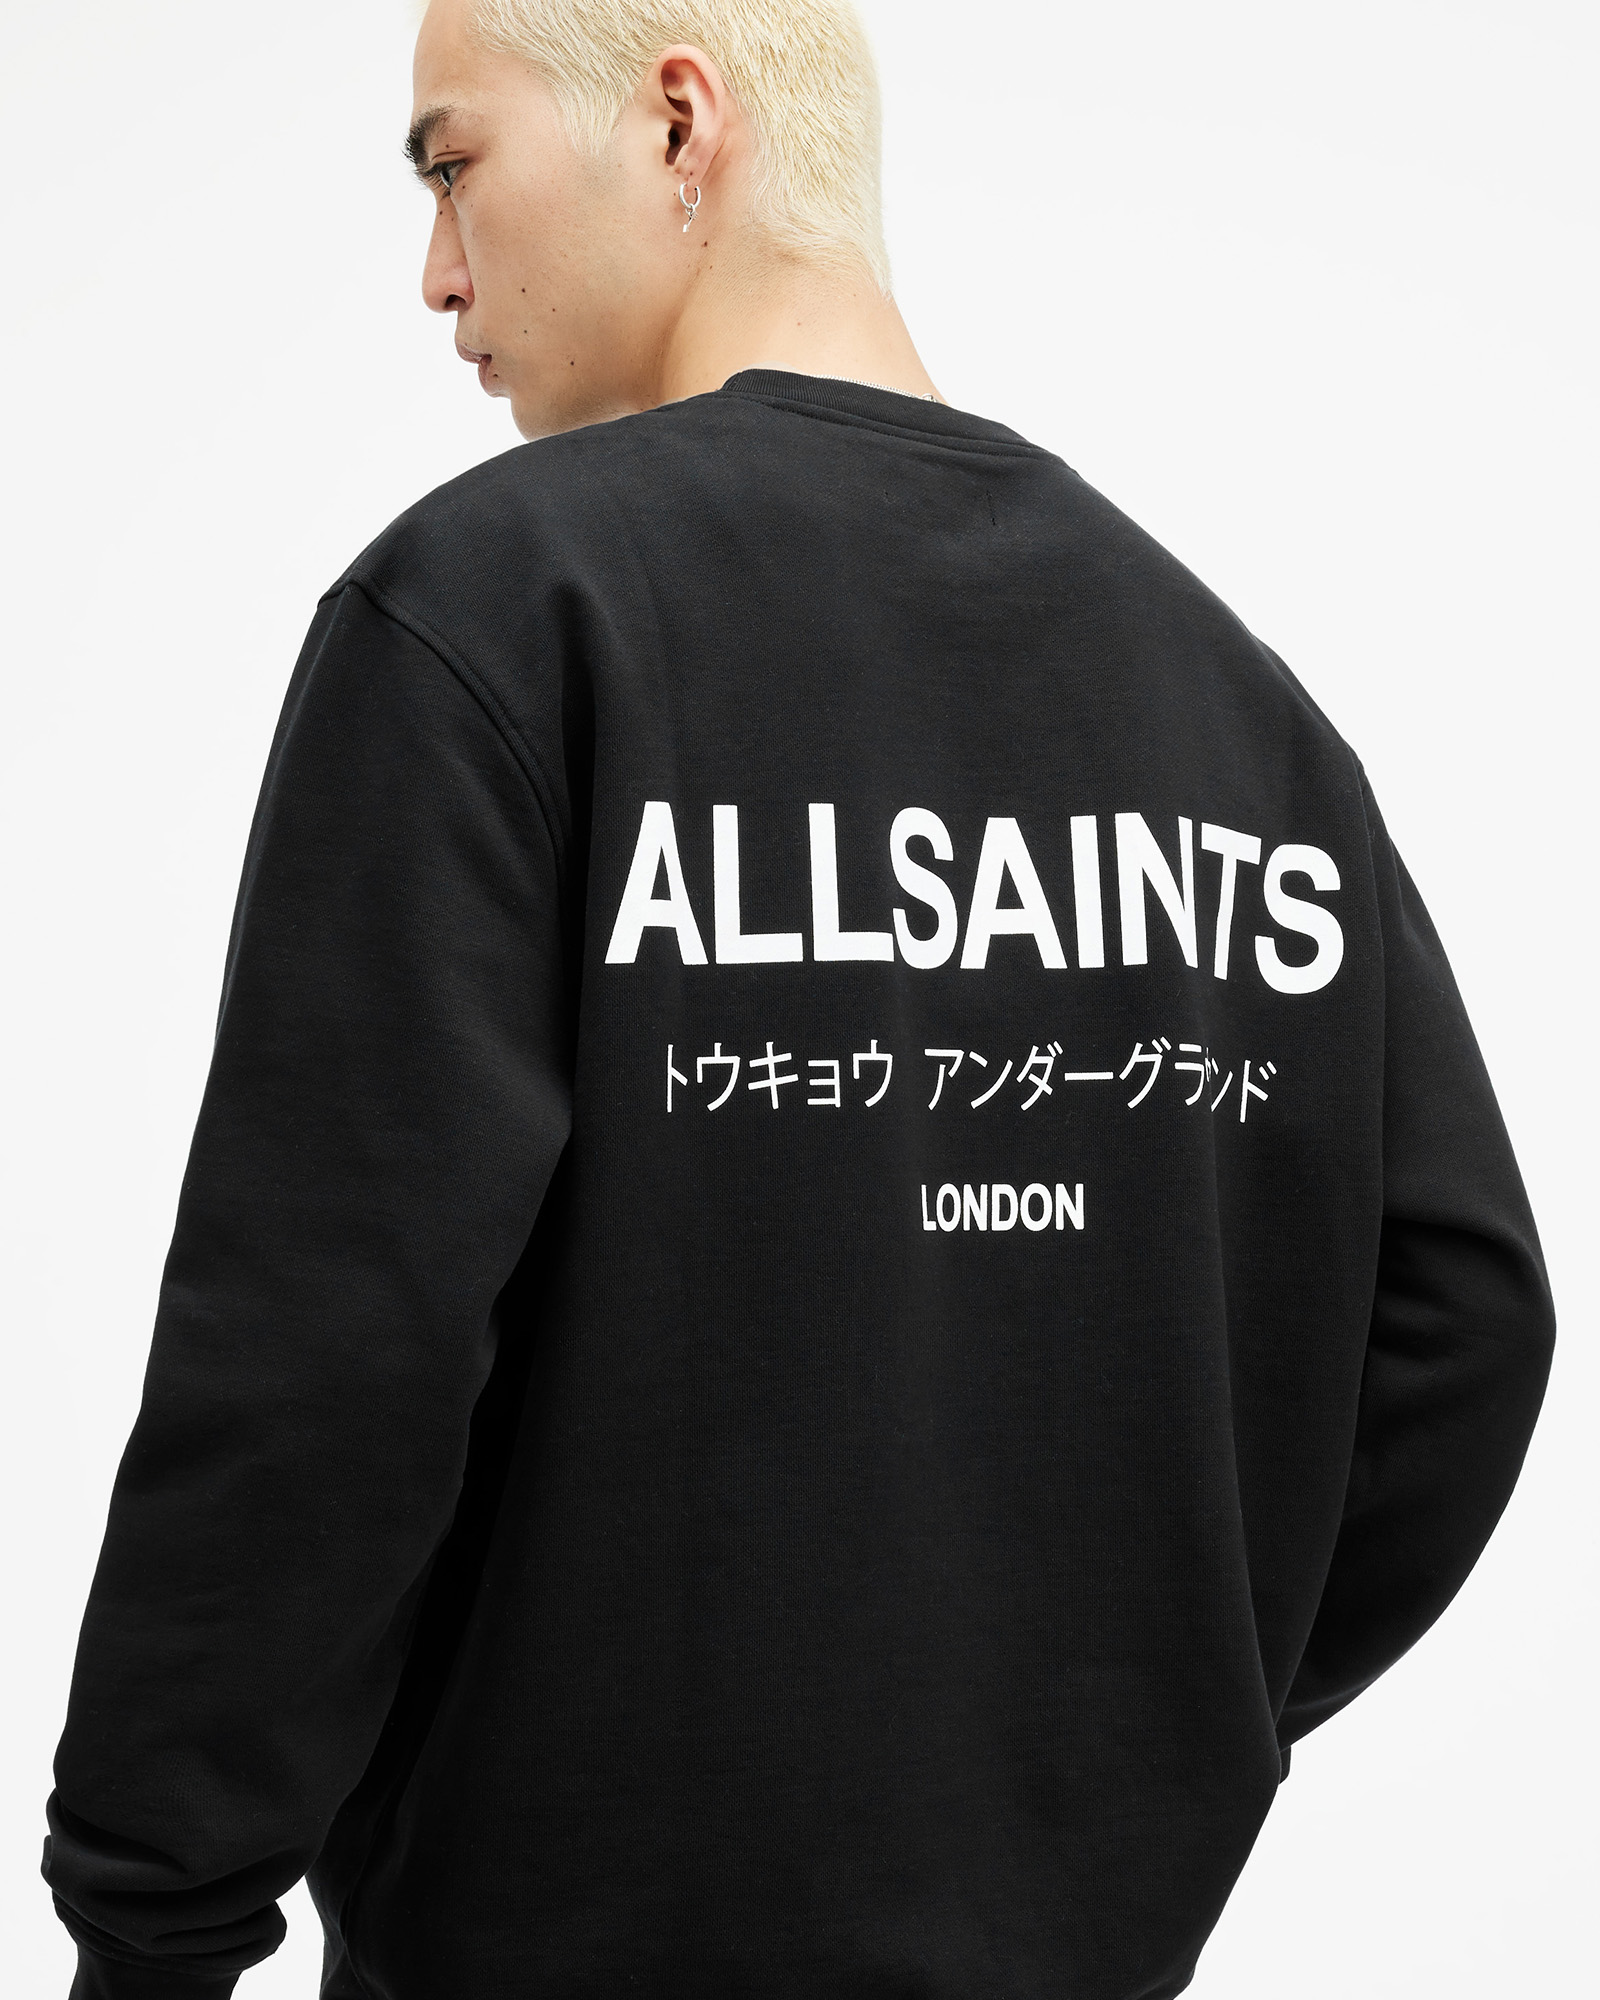 AllSaints Underground Sweatshirt